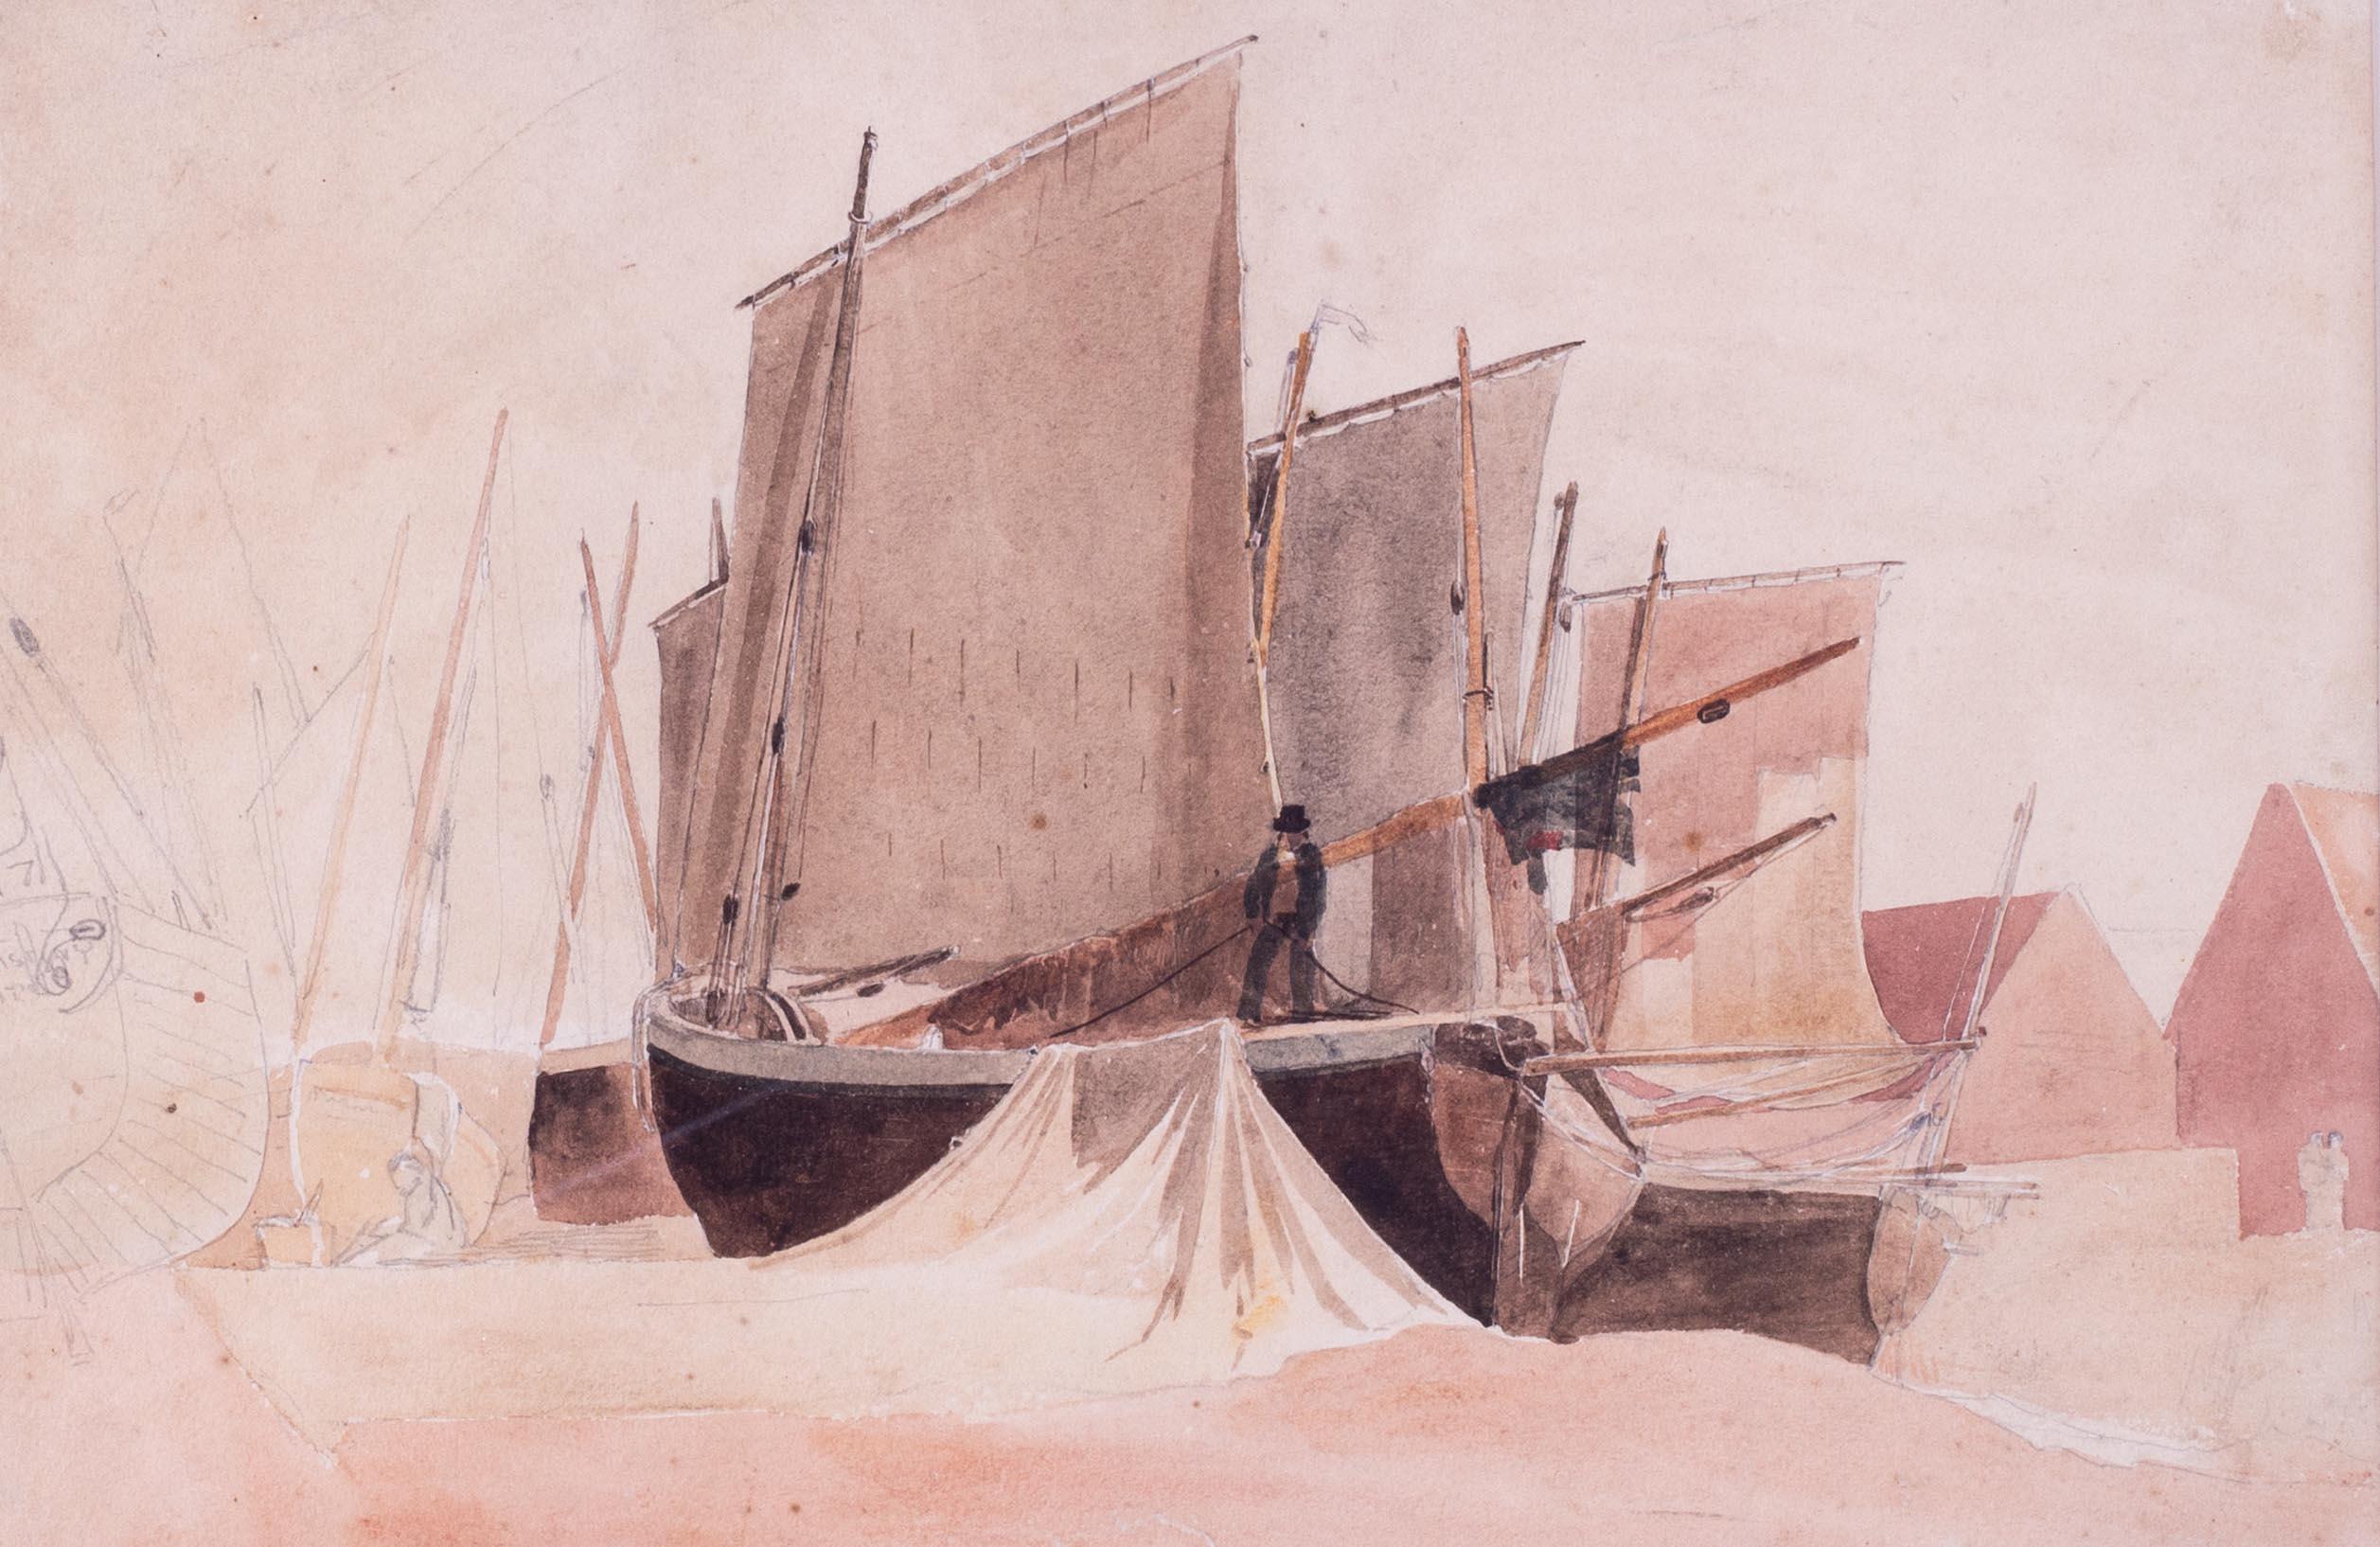 Aquarell von Fischerbooten bei Niedergezeiten aus dem 19. Jahrhundert des britischen Künstlers de Wint – Art von Peter de Wint